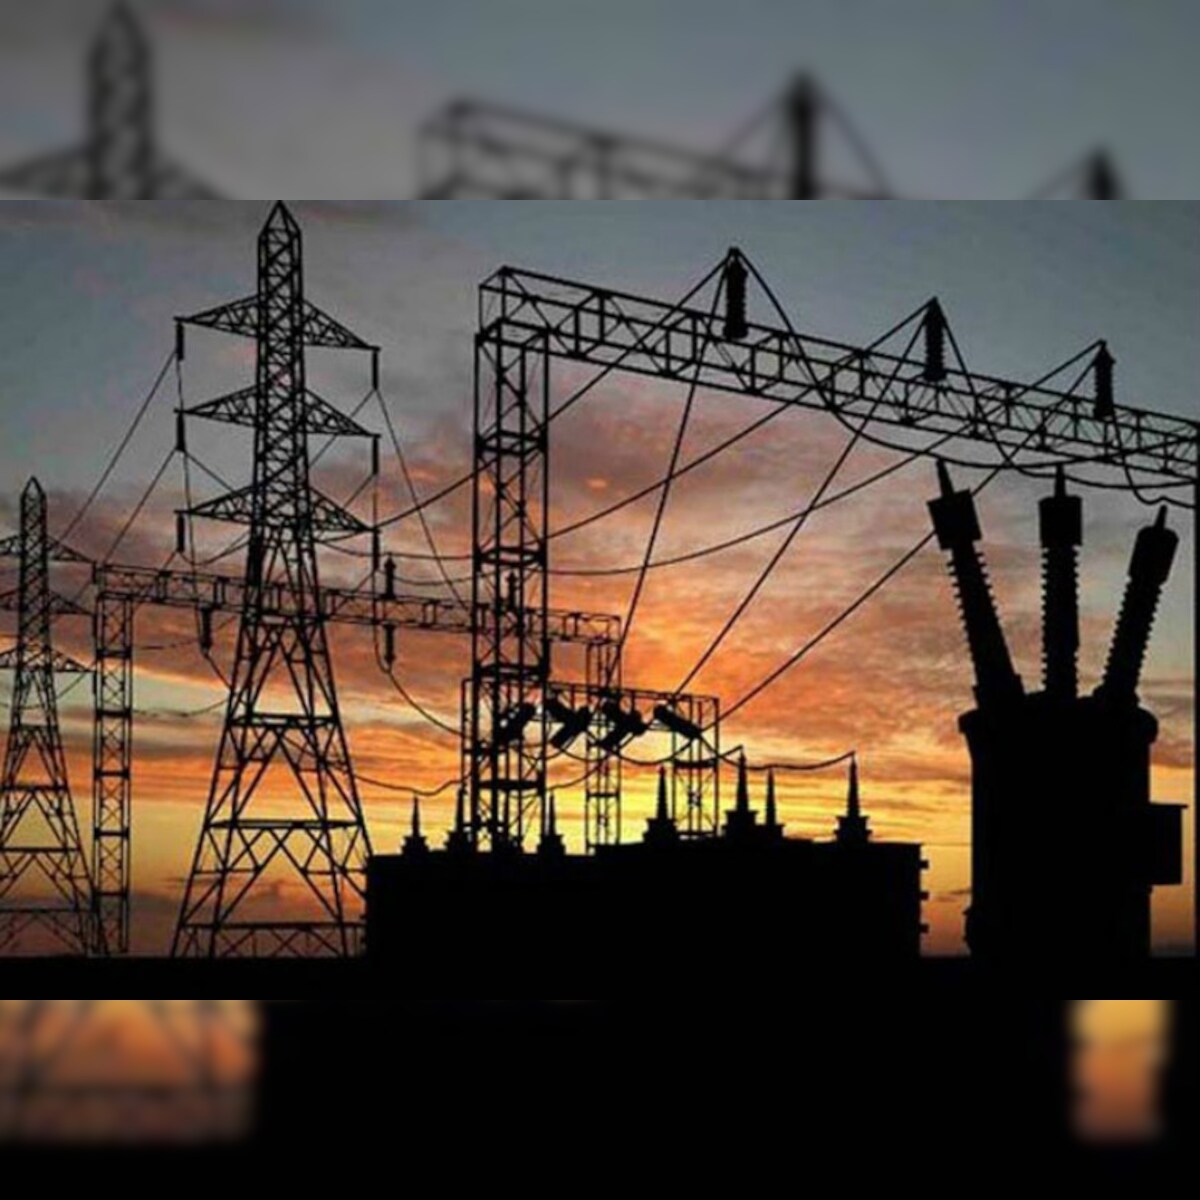 योगी सरकार में बिजली कटौती से त्रस्त है जनता: कांग्रेस – News18 हिंदी